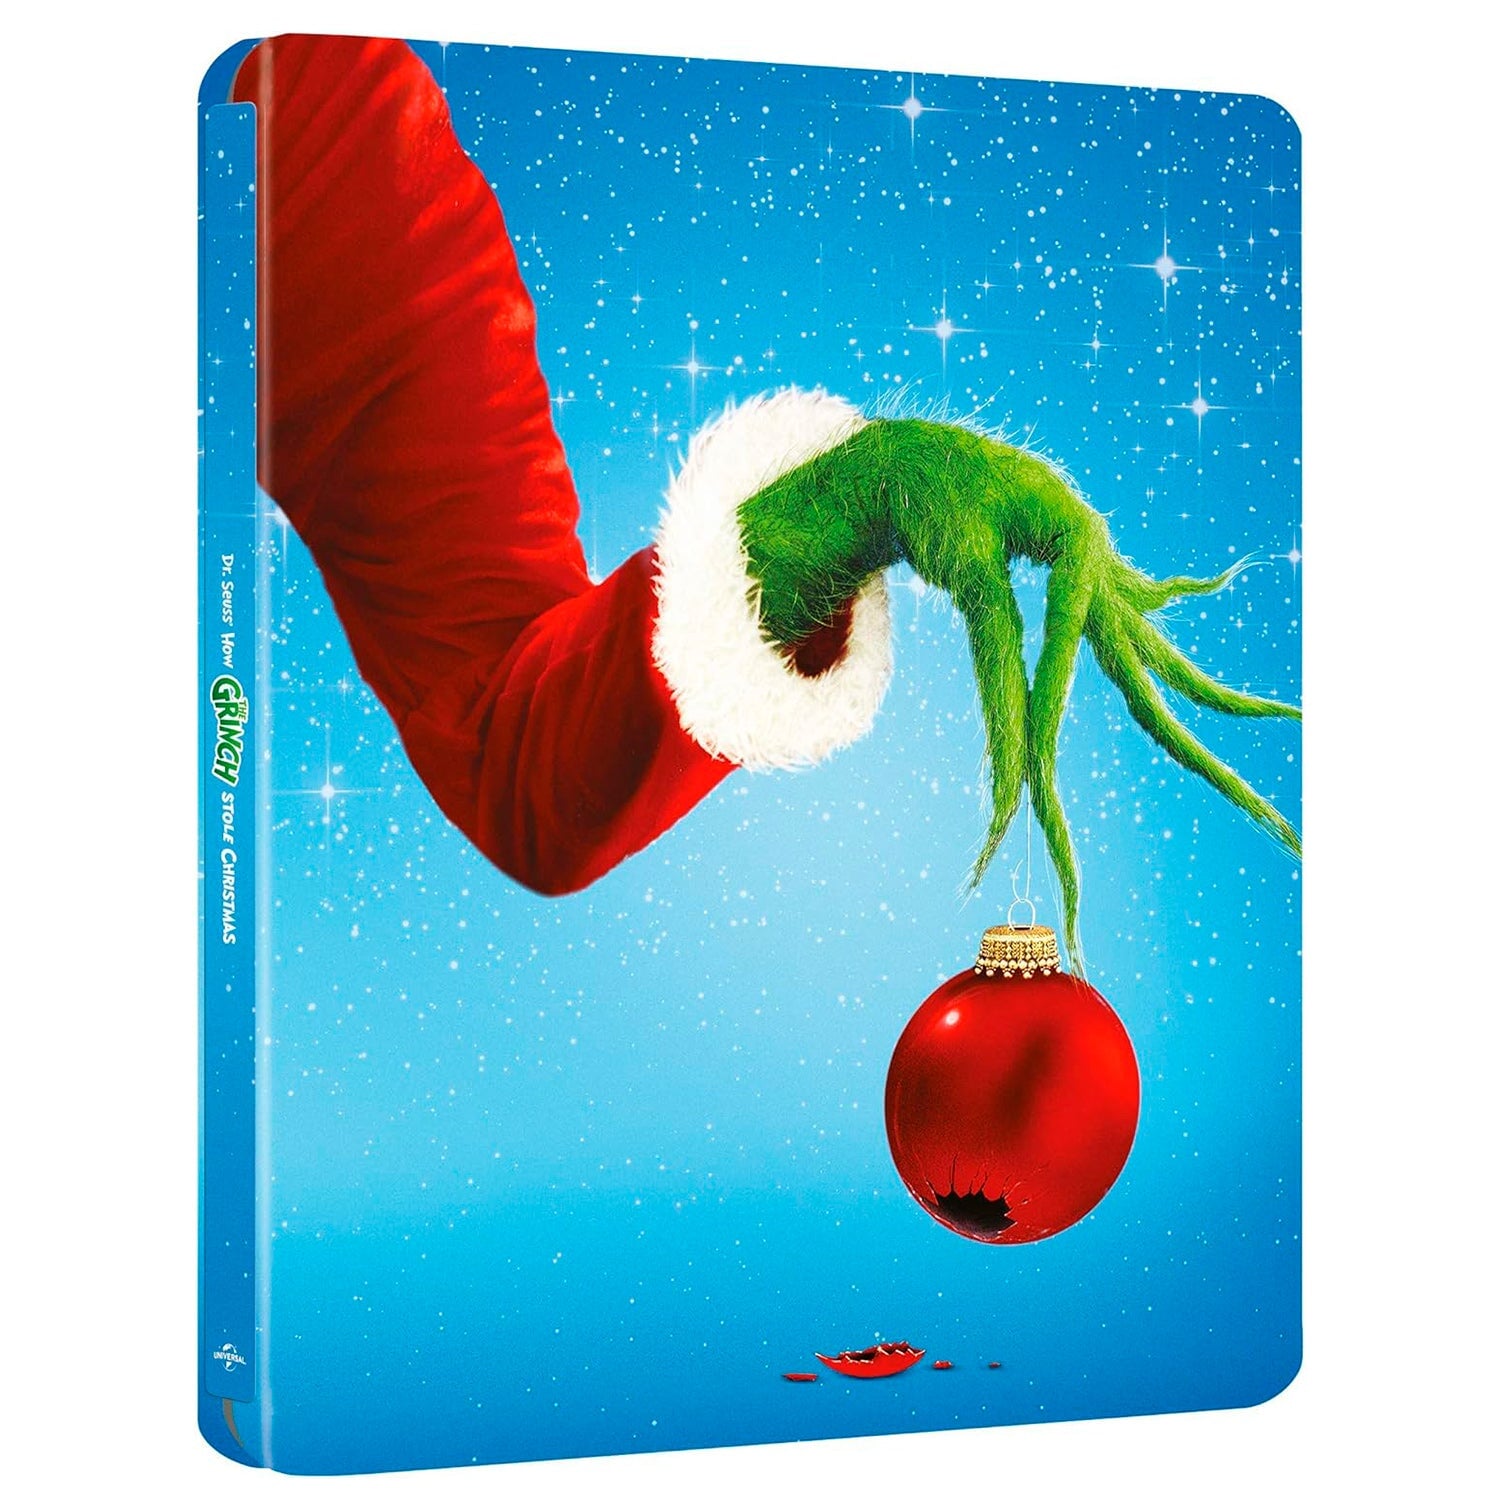 Гринч – похититель Рождества (2000) (англ. язык) (4K UHD + Blu-ray) Steelbook